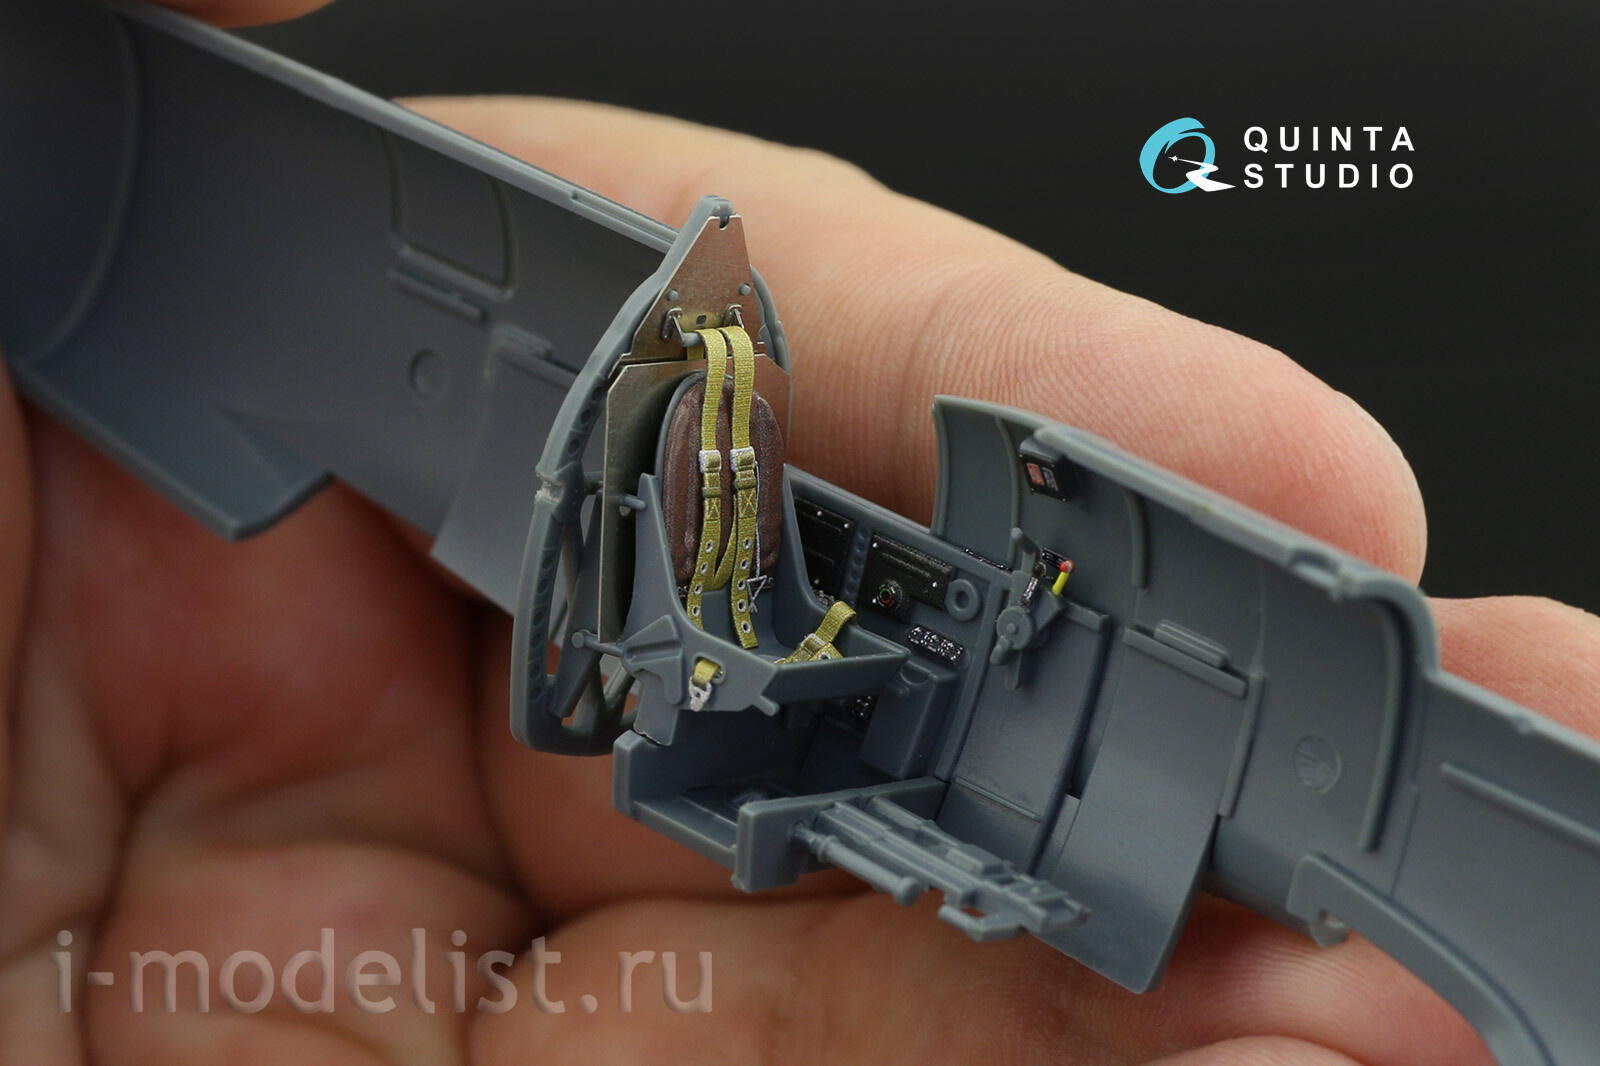 QD48121 Quinta Studio 1/48 3D Cabin Interior Decal Spitfire Mk.XVI (Eduard)